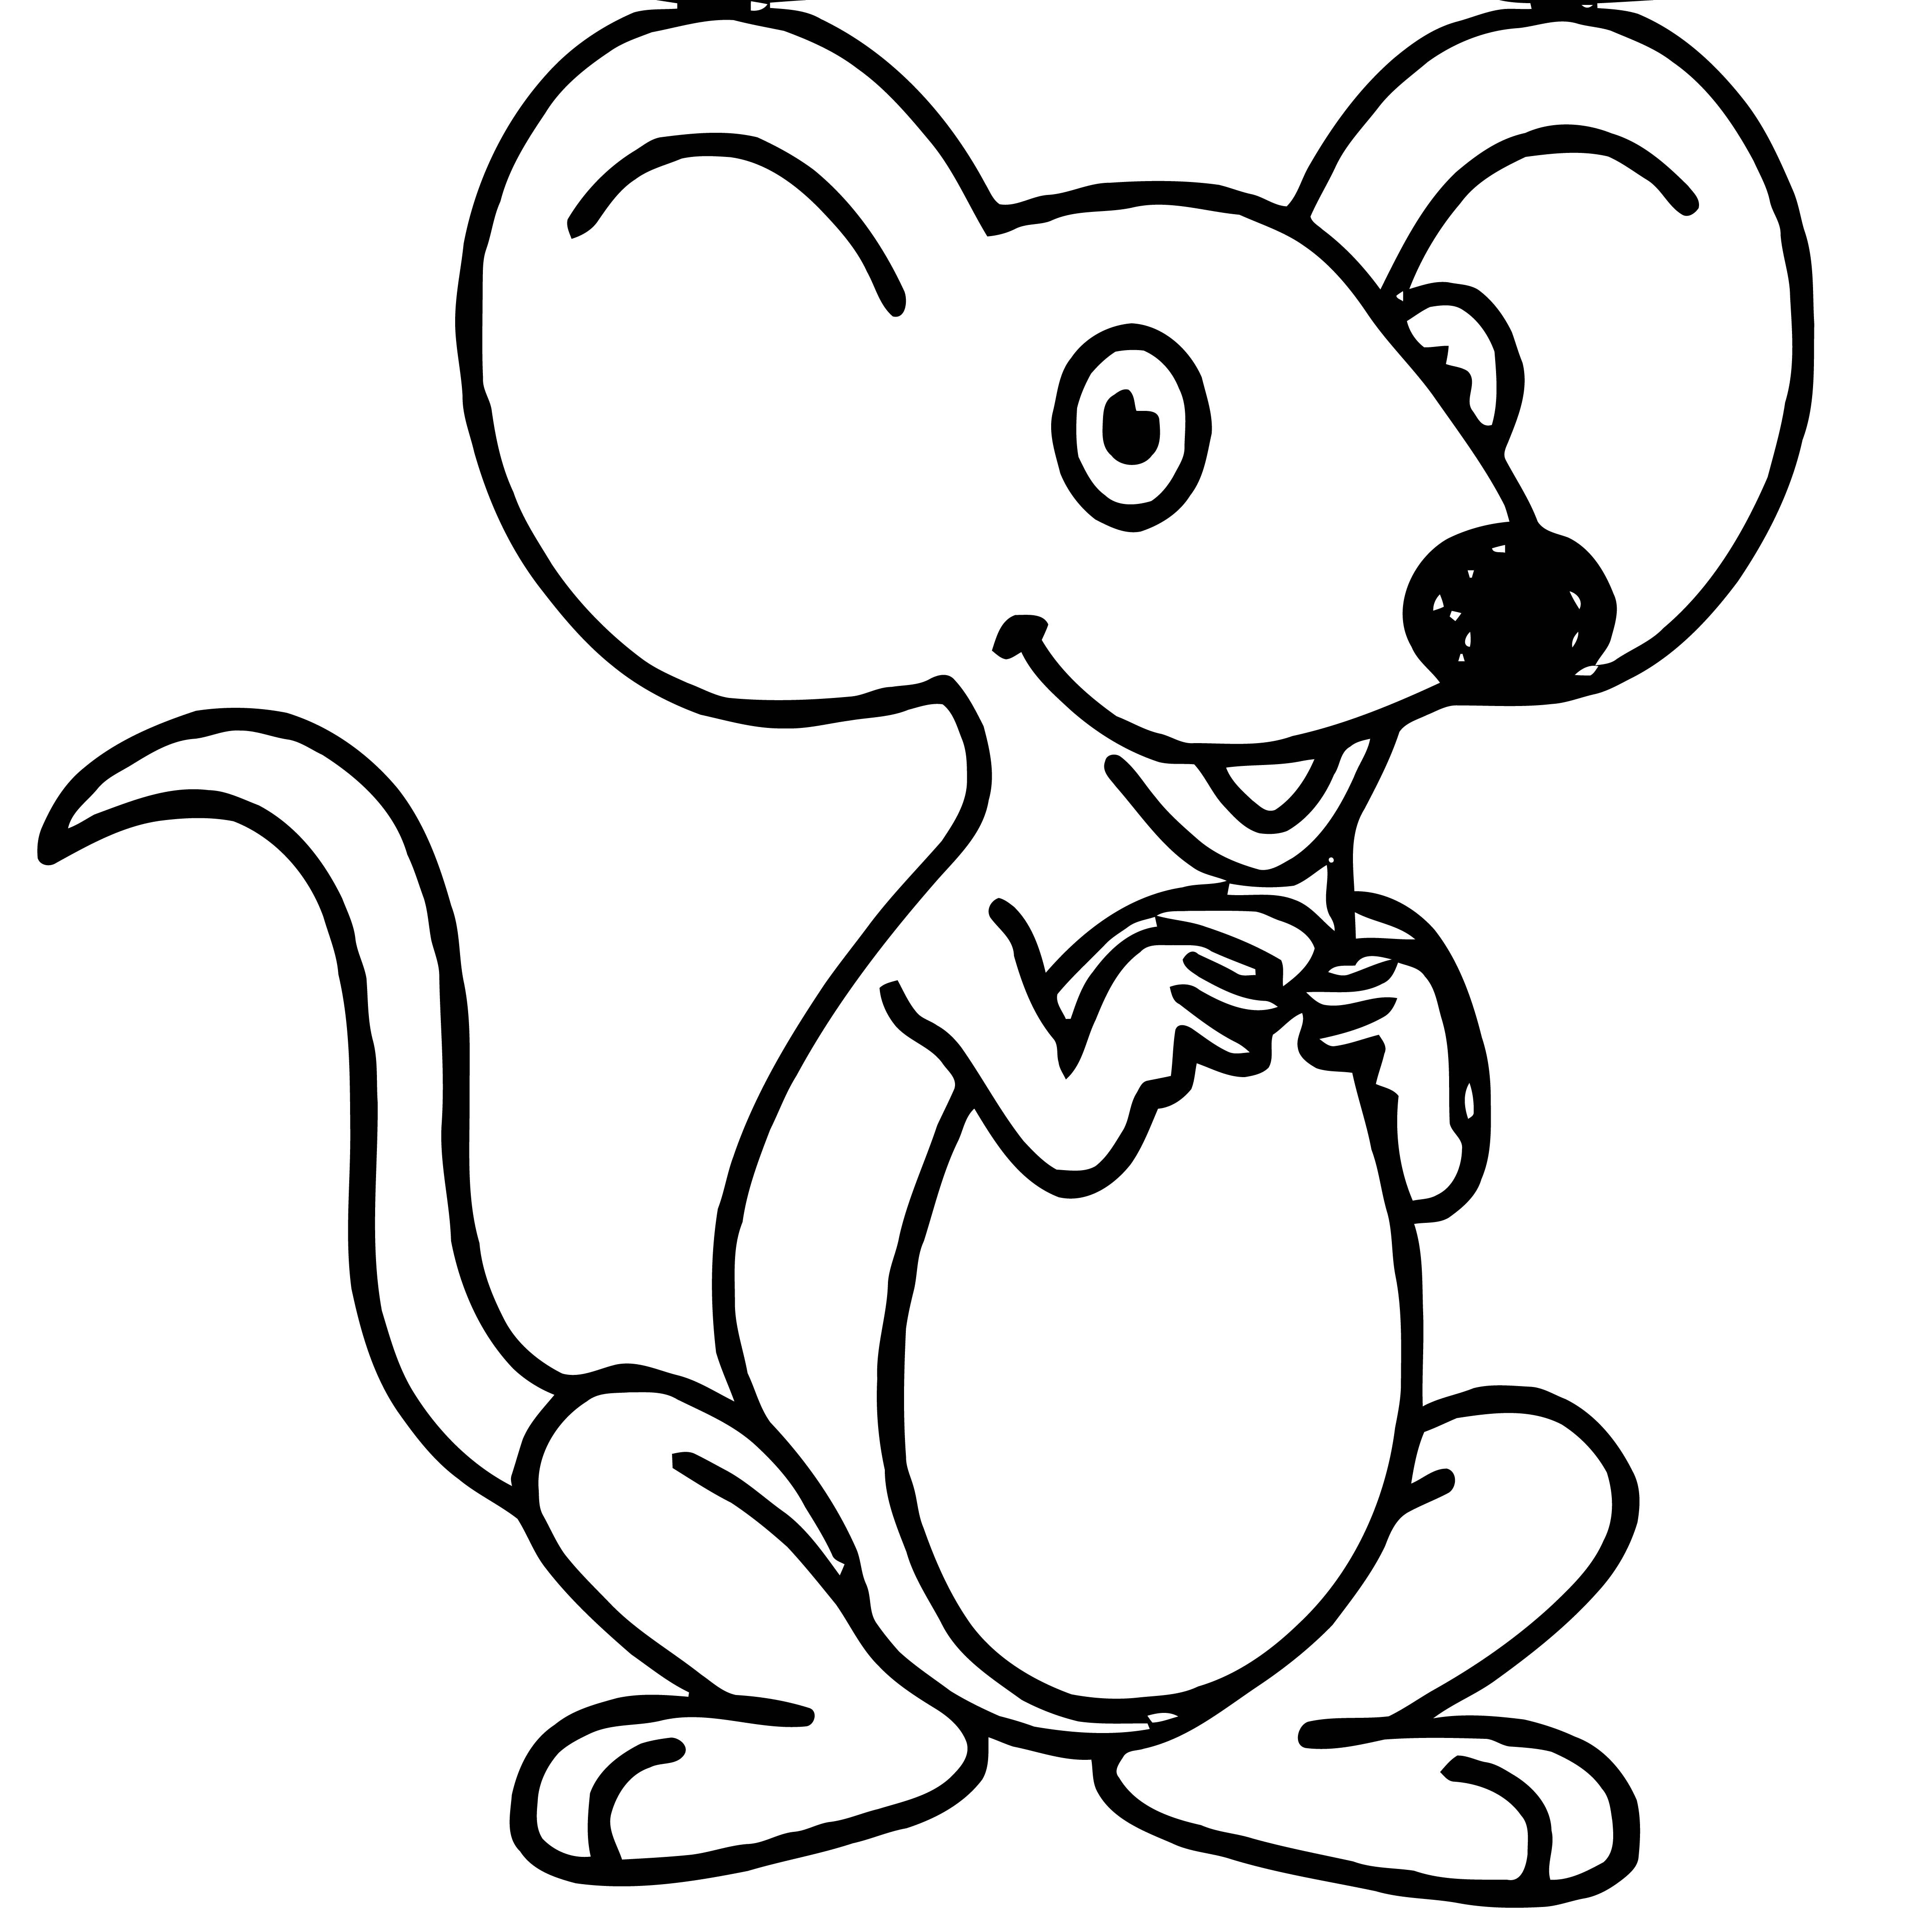 Раскраска мышь распечатать. Раскраска мышка. Мышка раскраска для детей. Мышонок раскраска для детей. Мышь раскраска для малышей.